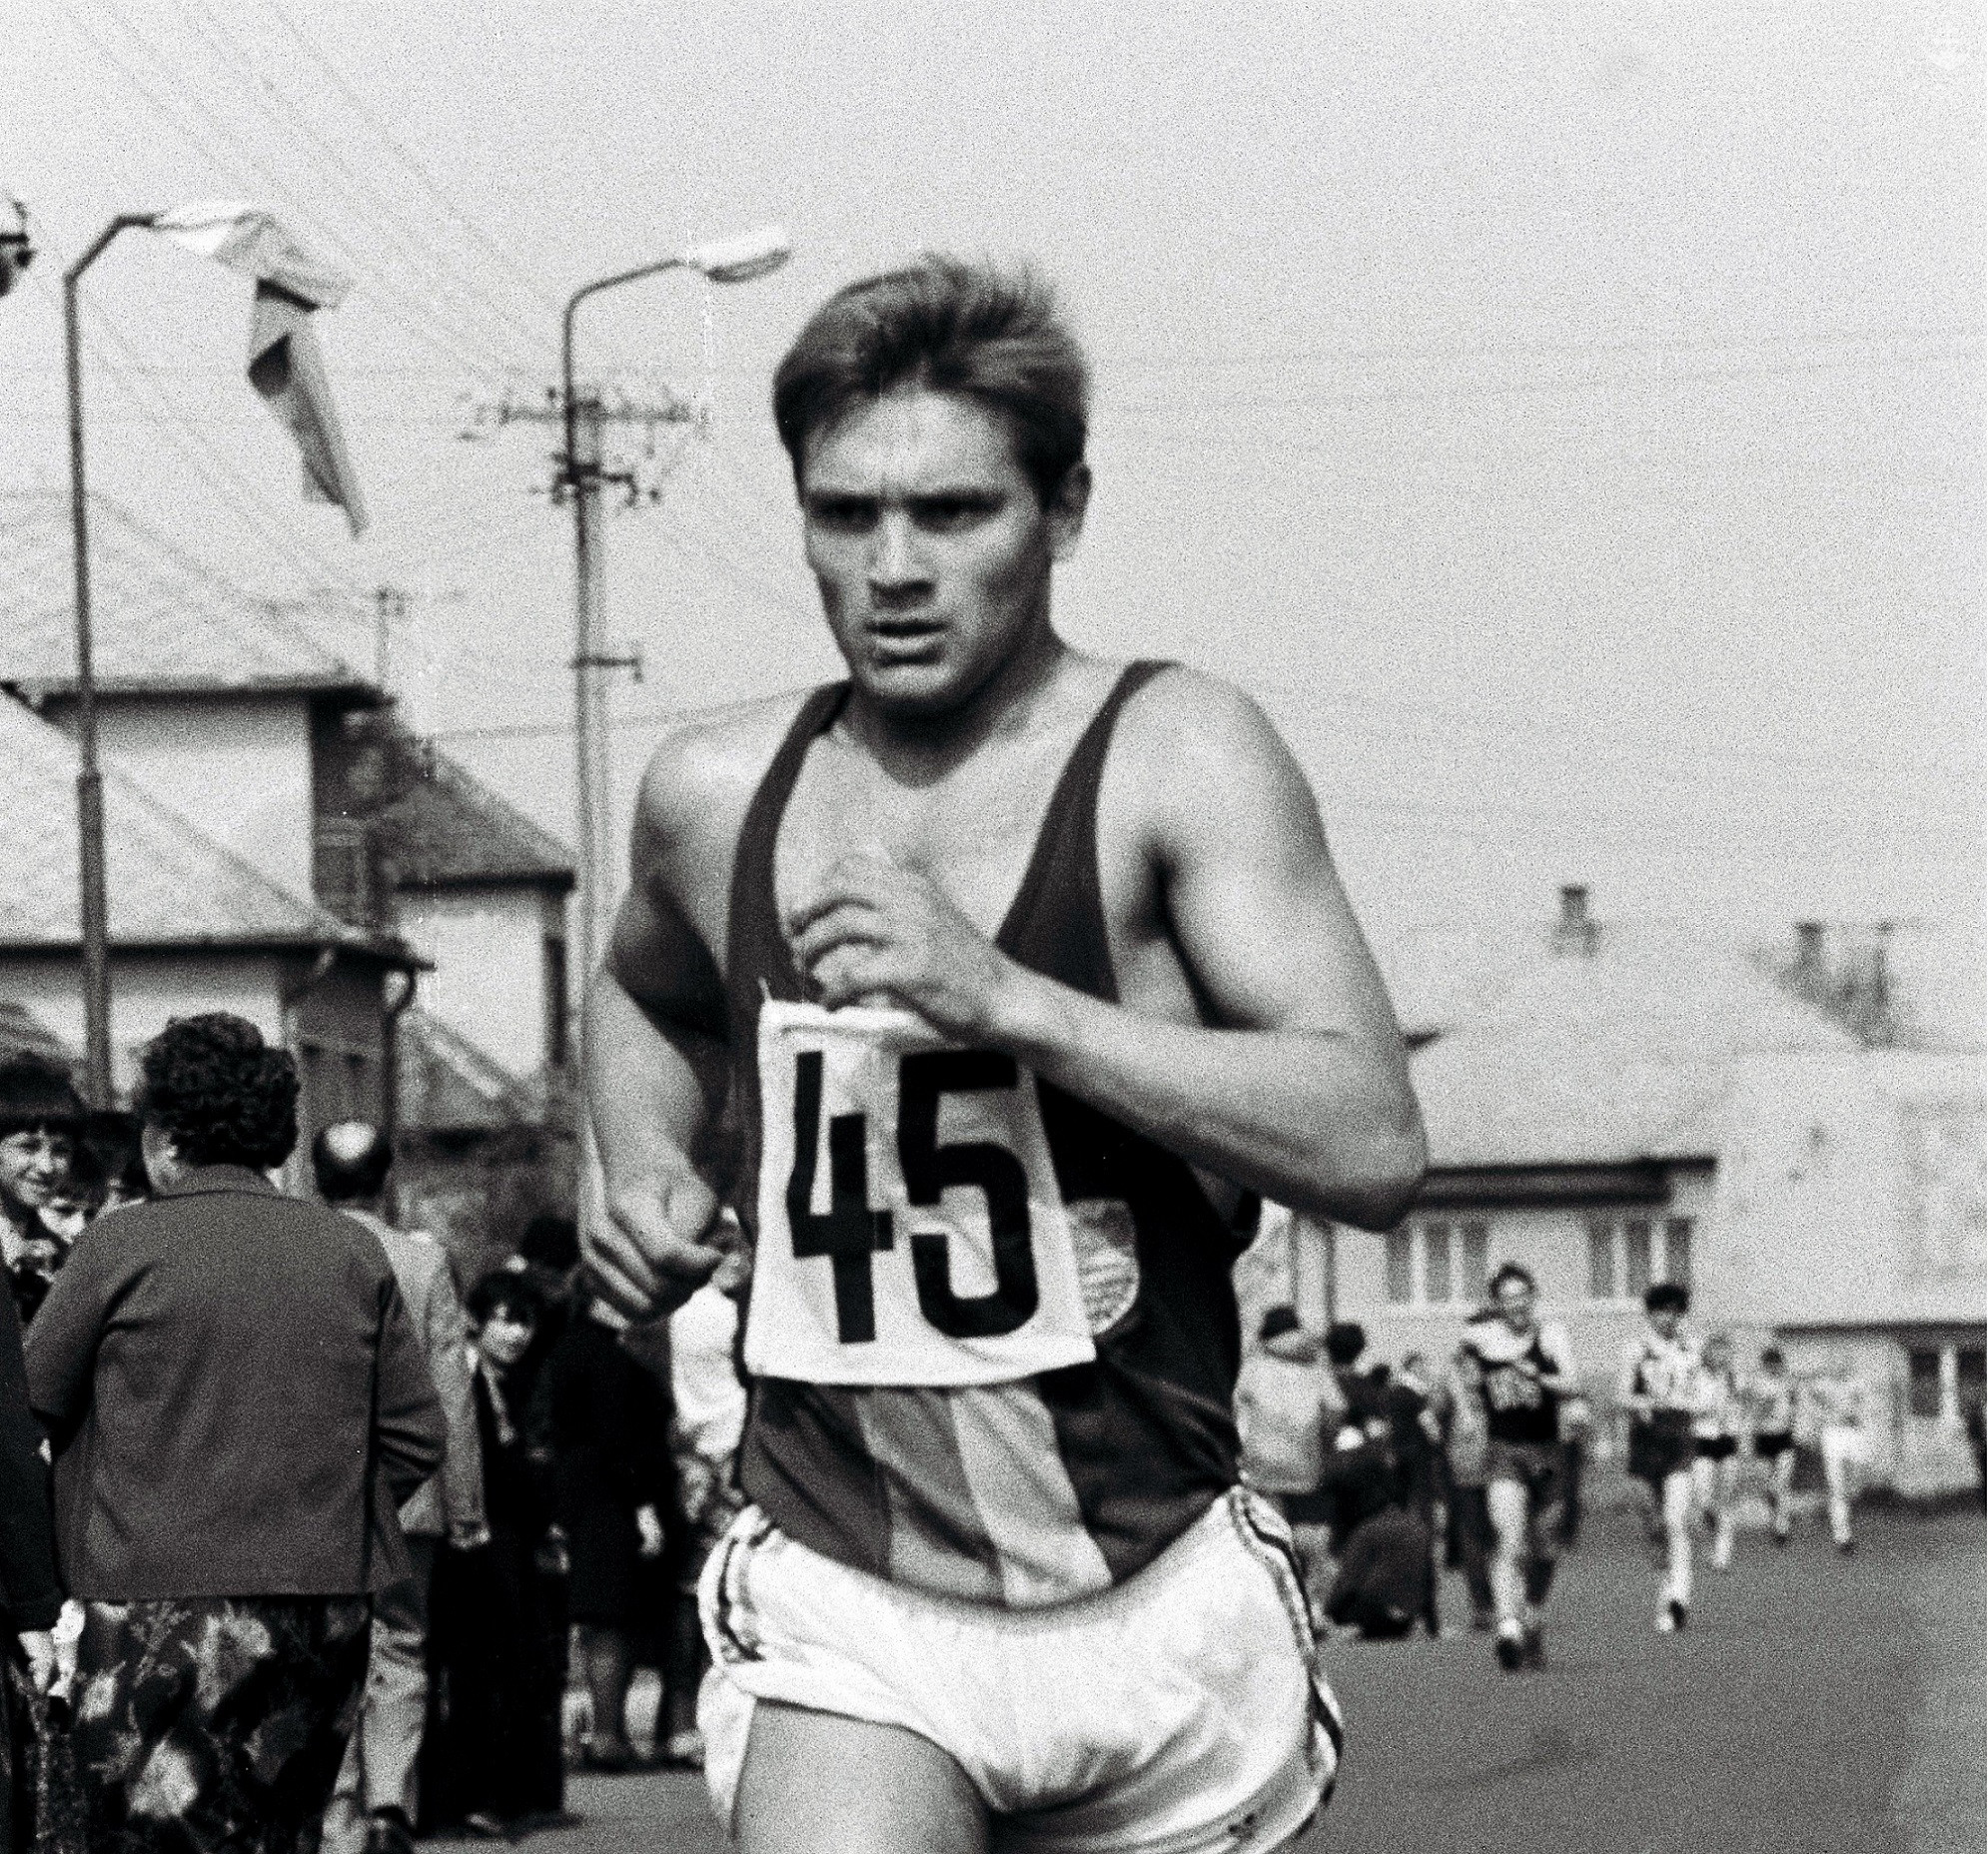 Slovák Jozef Pribilinec, zlatý medailista z OH 1988 v Soule v chôdzi na 20 km.